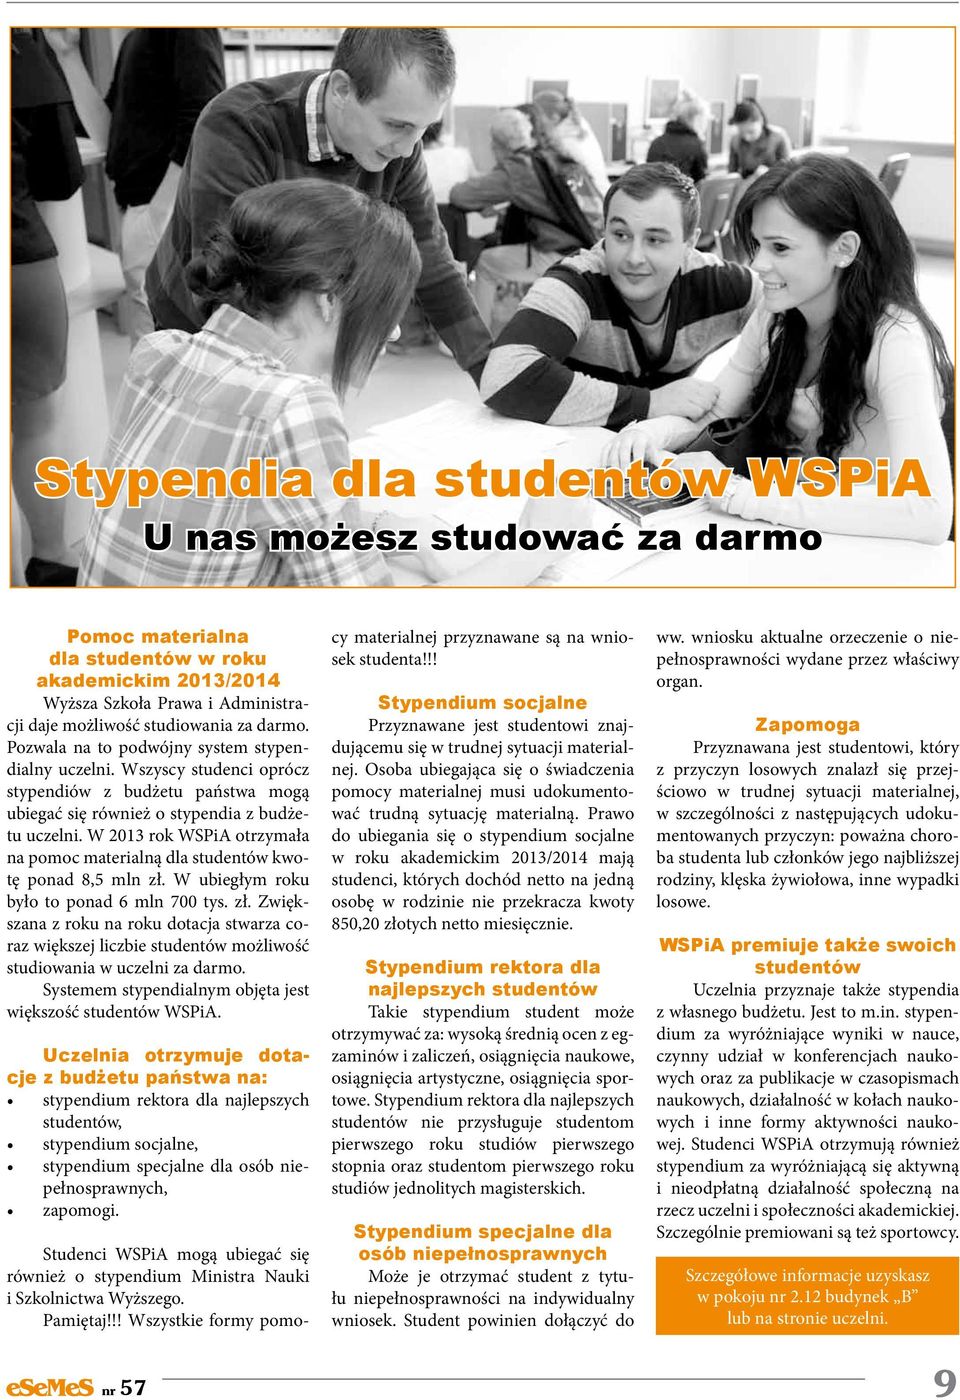 W 2013 rok WSPiA otrzymała na pomoc materialną dla studentów kwotę ponad 8,5 mln zł.